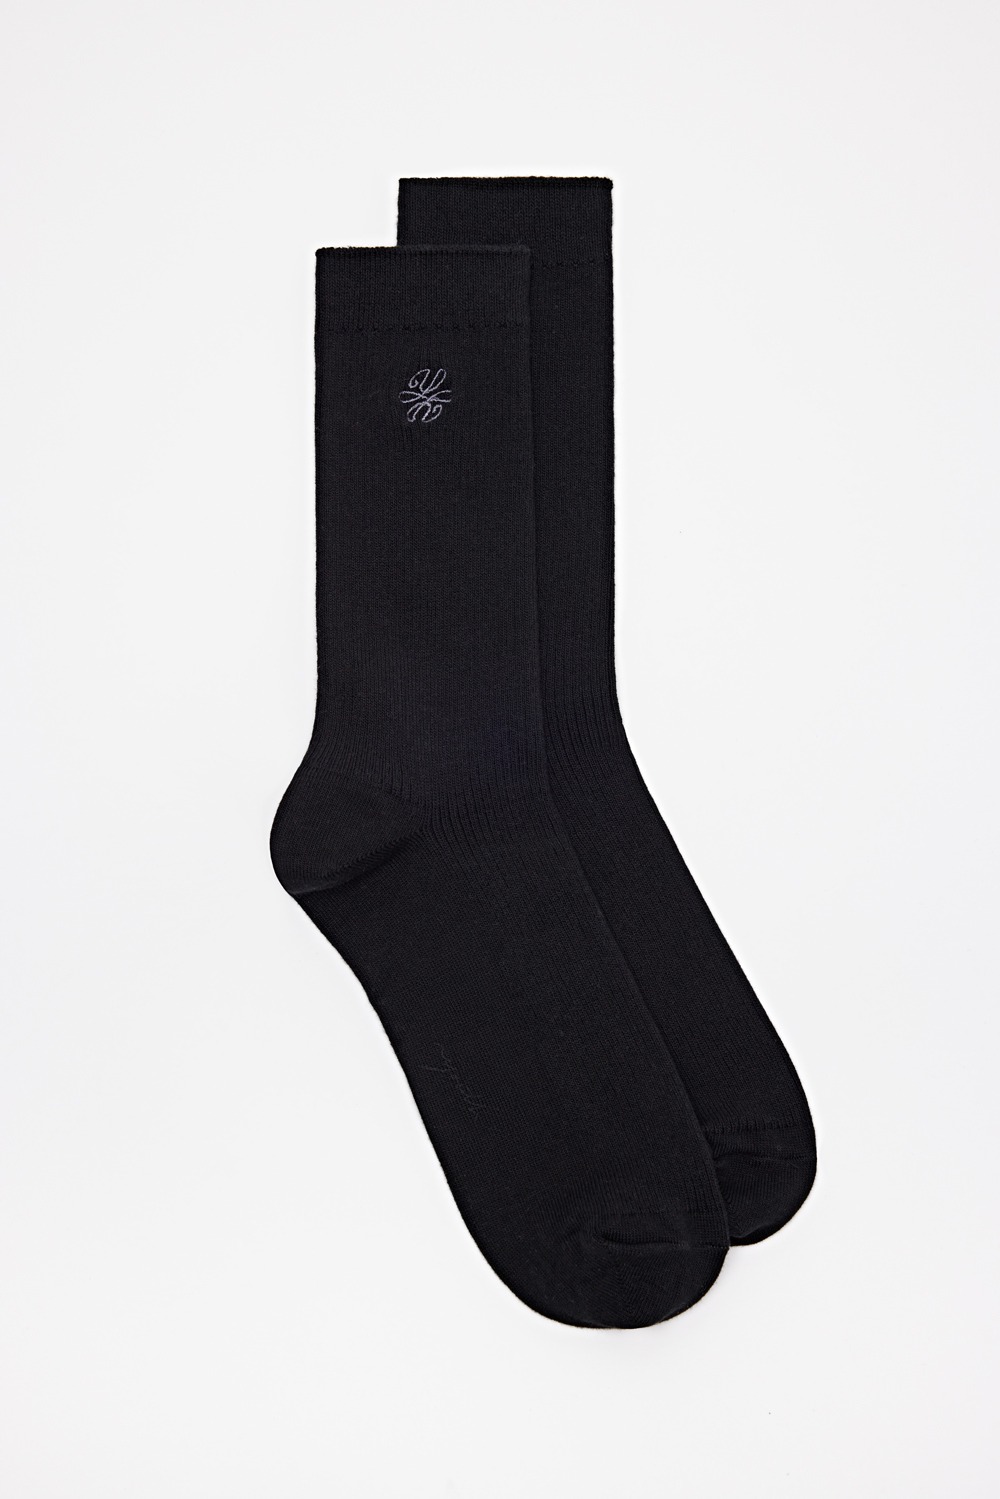 Essential Socks (Half)-Black